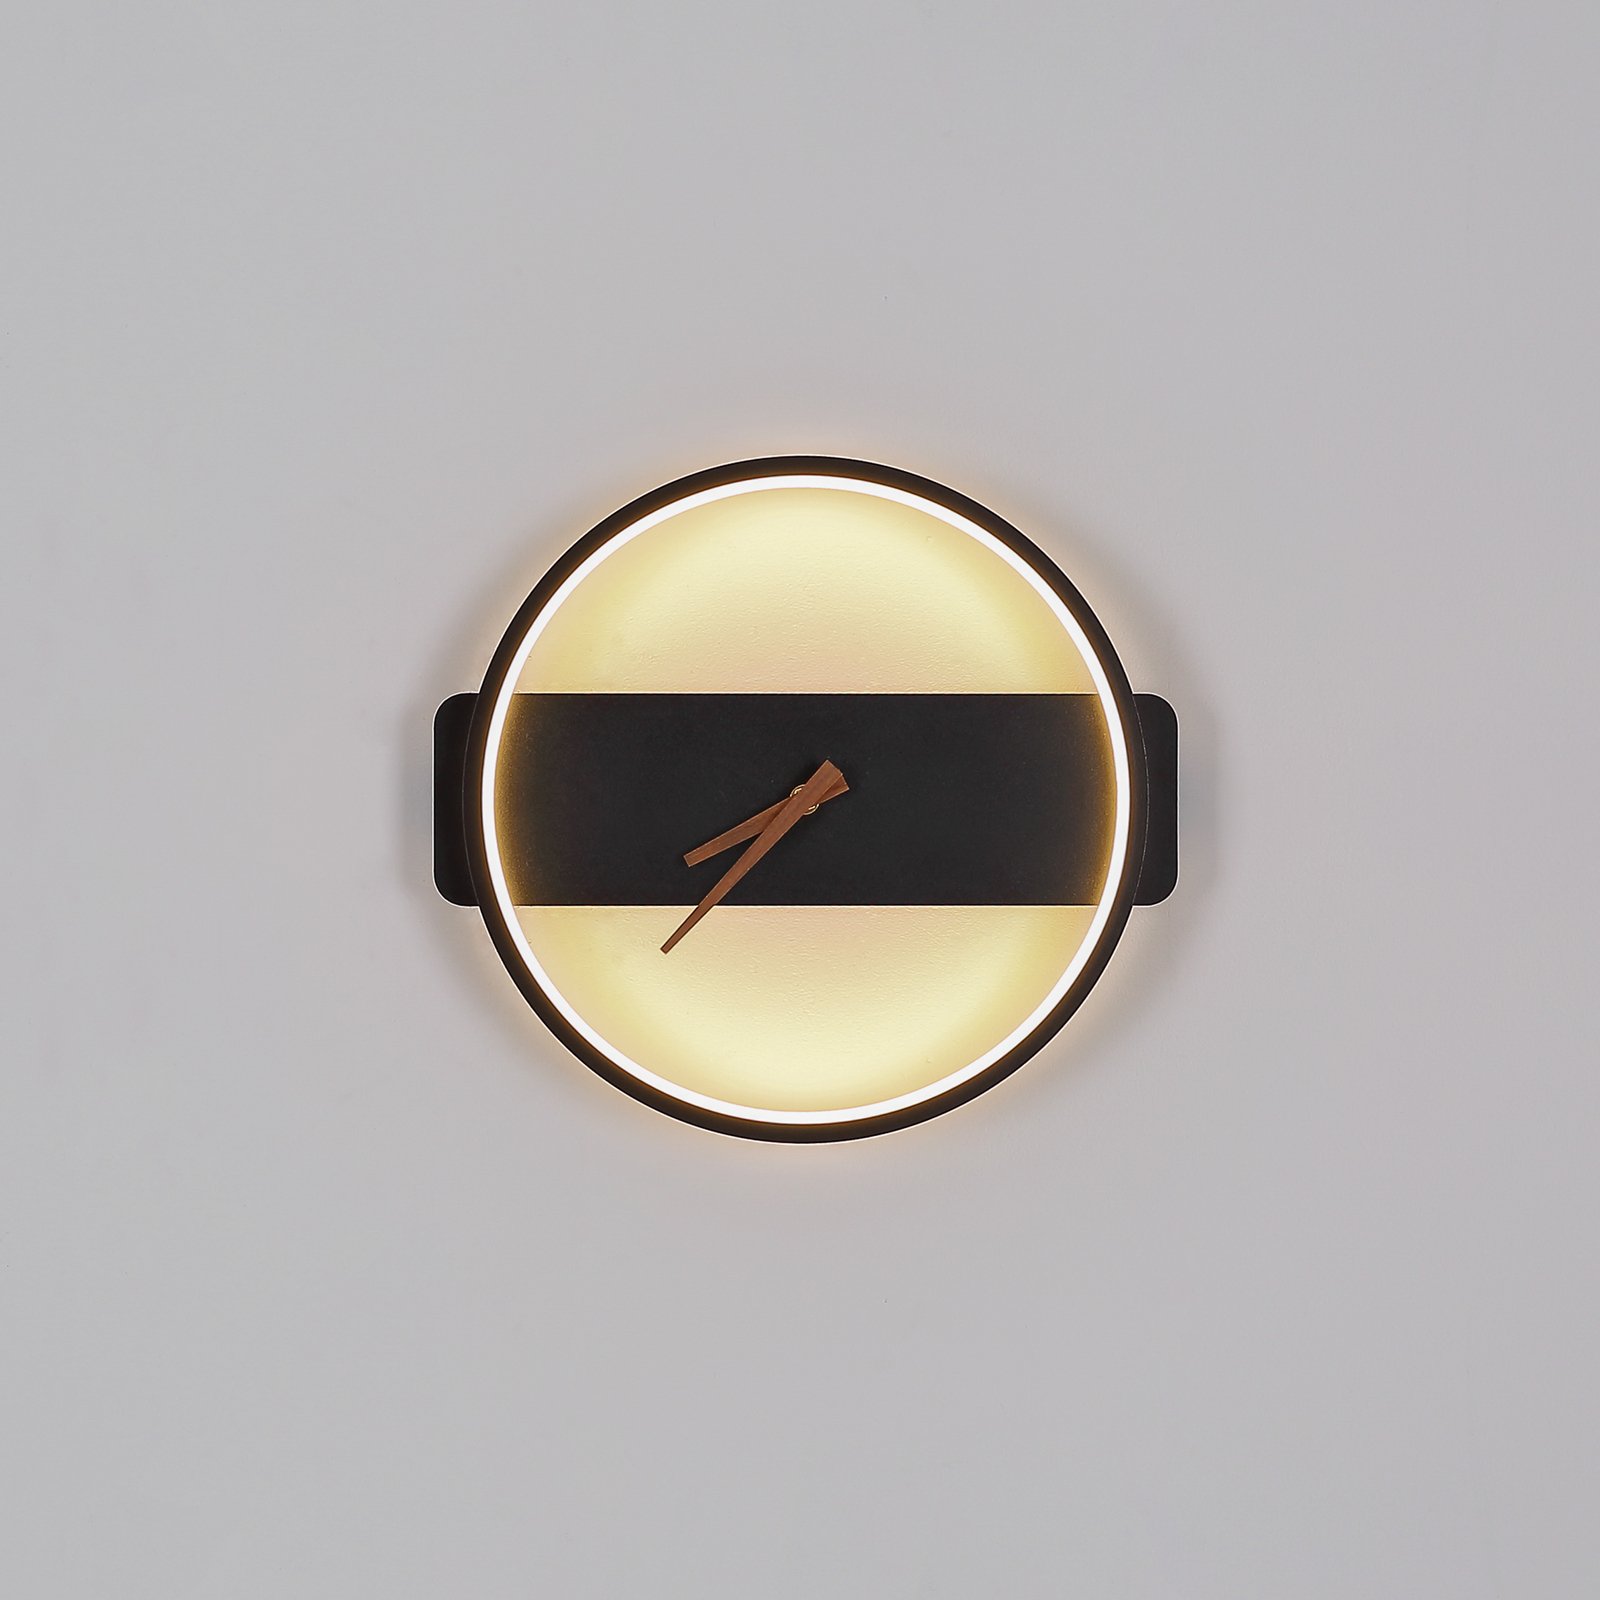 LED nástěnné světlo Sussy s hodinami, černá, 32 cm